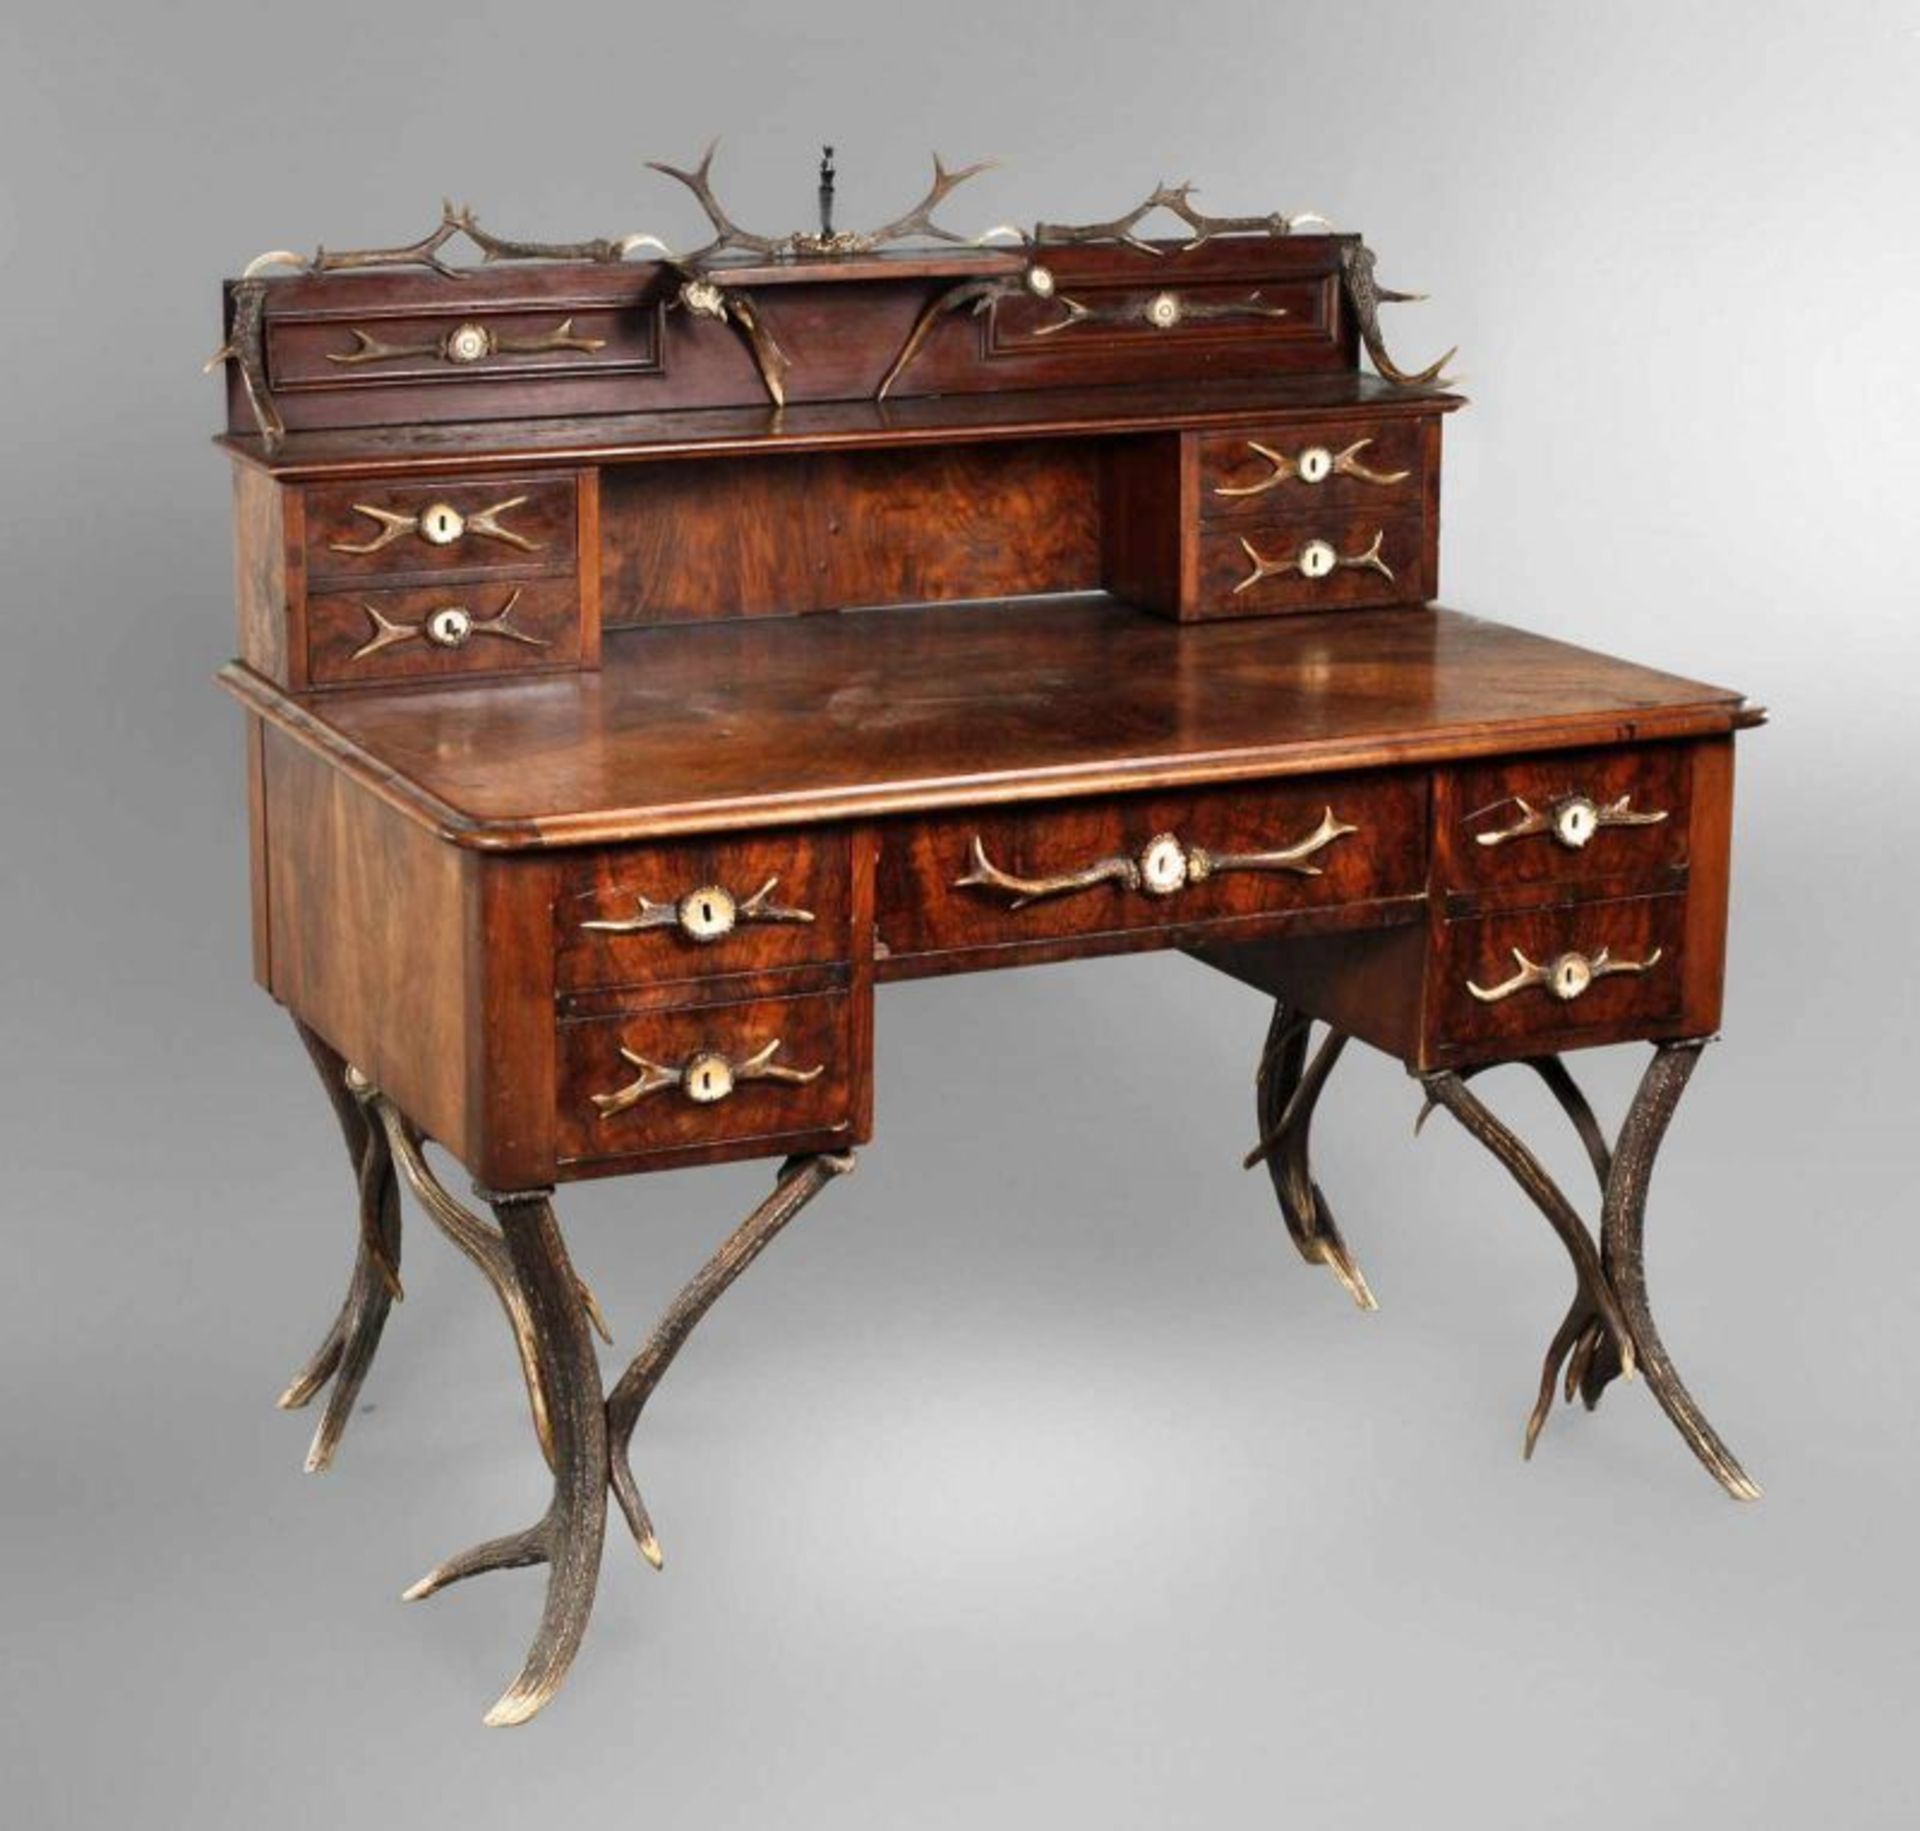 Jagdlicher Schreibtisch um 1870, nussbaumfurniert, reich verzierter Aufsatzschreibtisch, alle